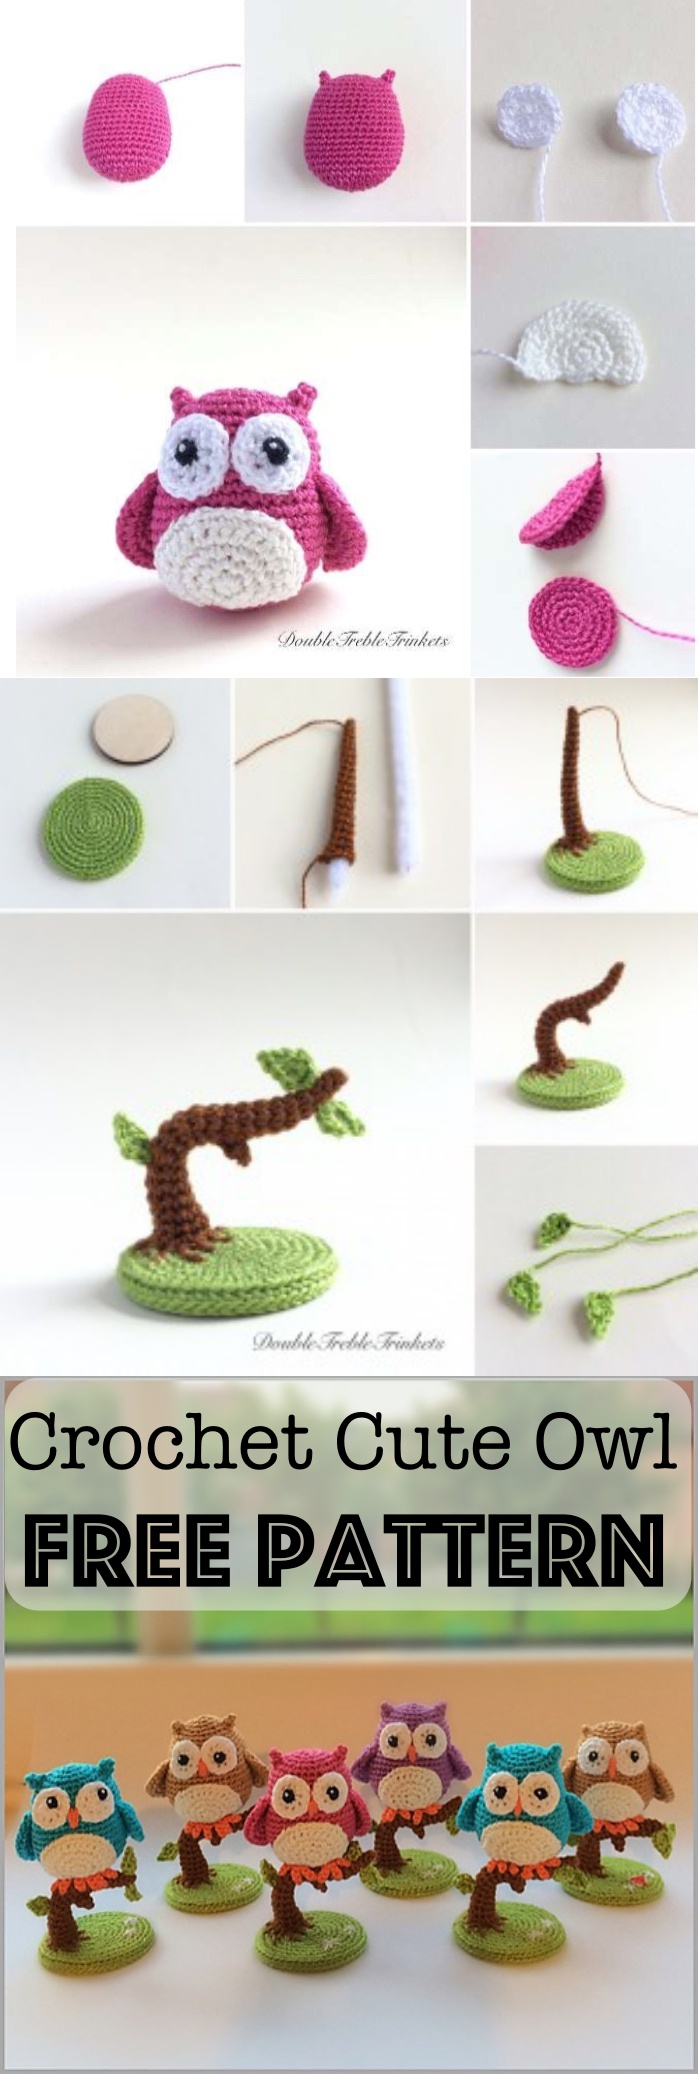 Crochet Cute Little Owls with Free Pattern